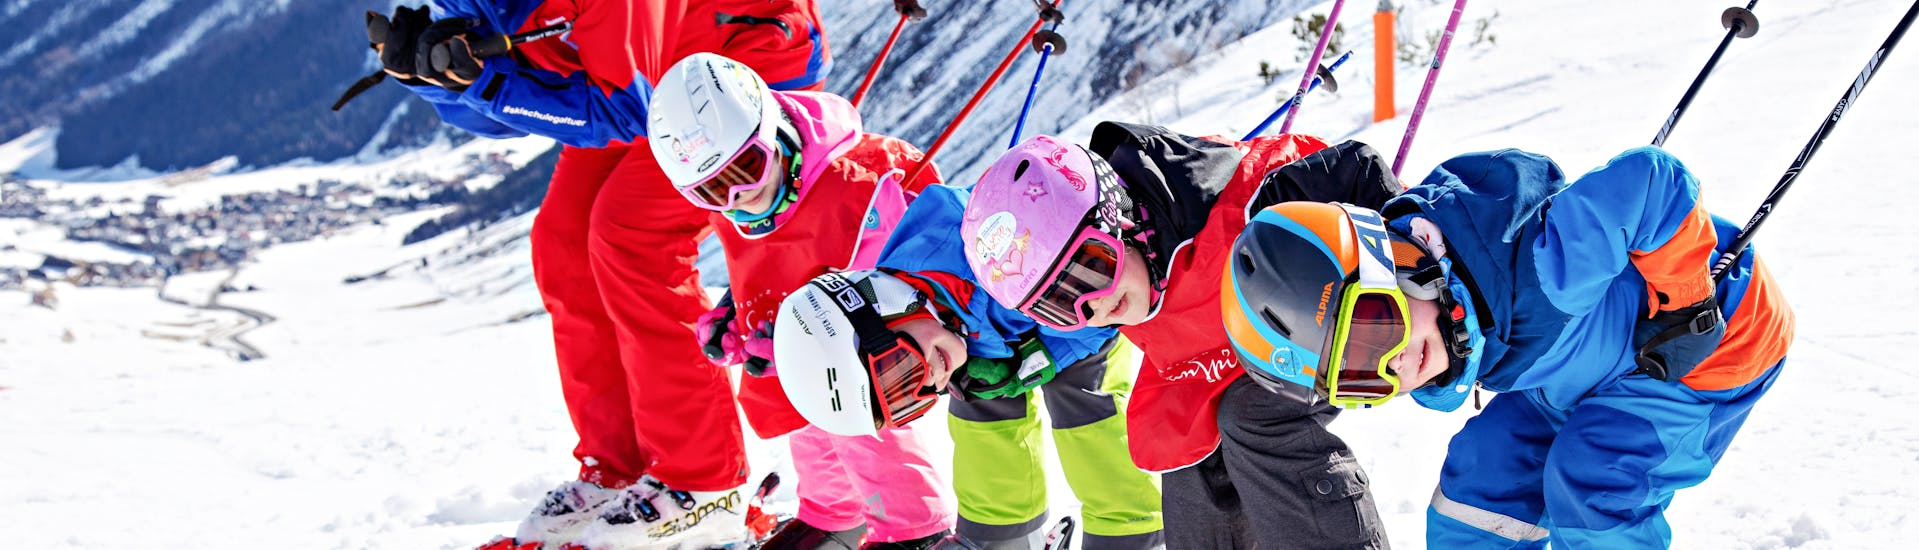 Lezioni di sci per bambini a partire da 4 anni per avanzati.